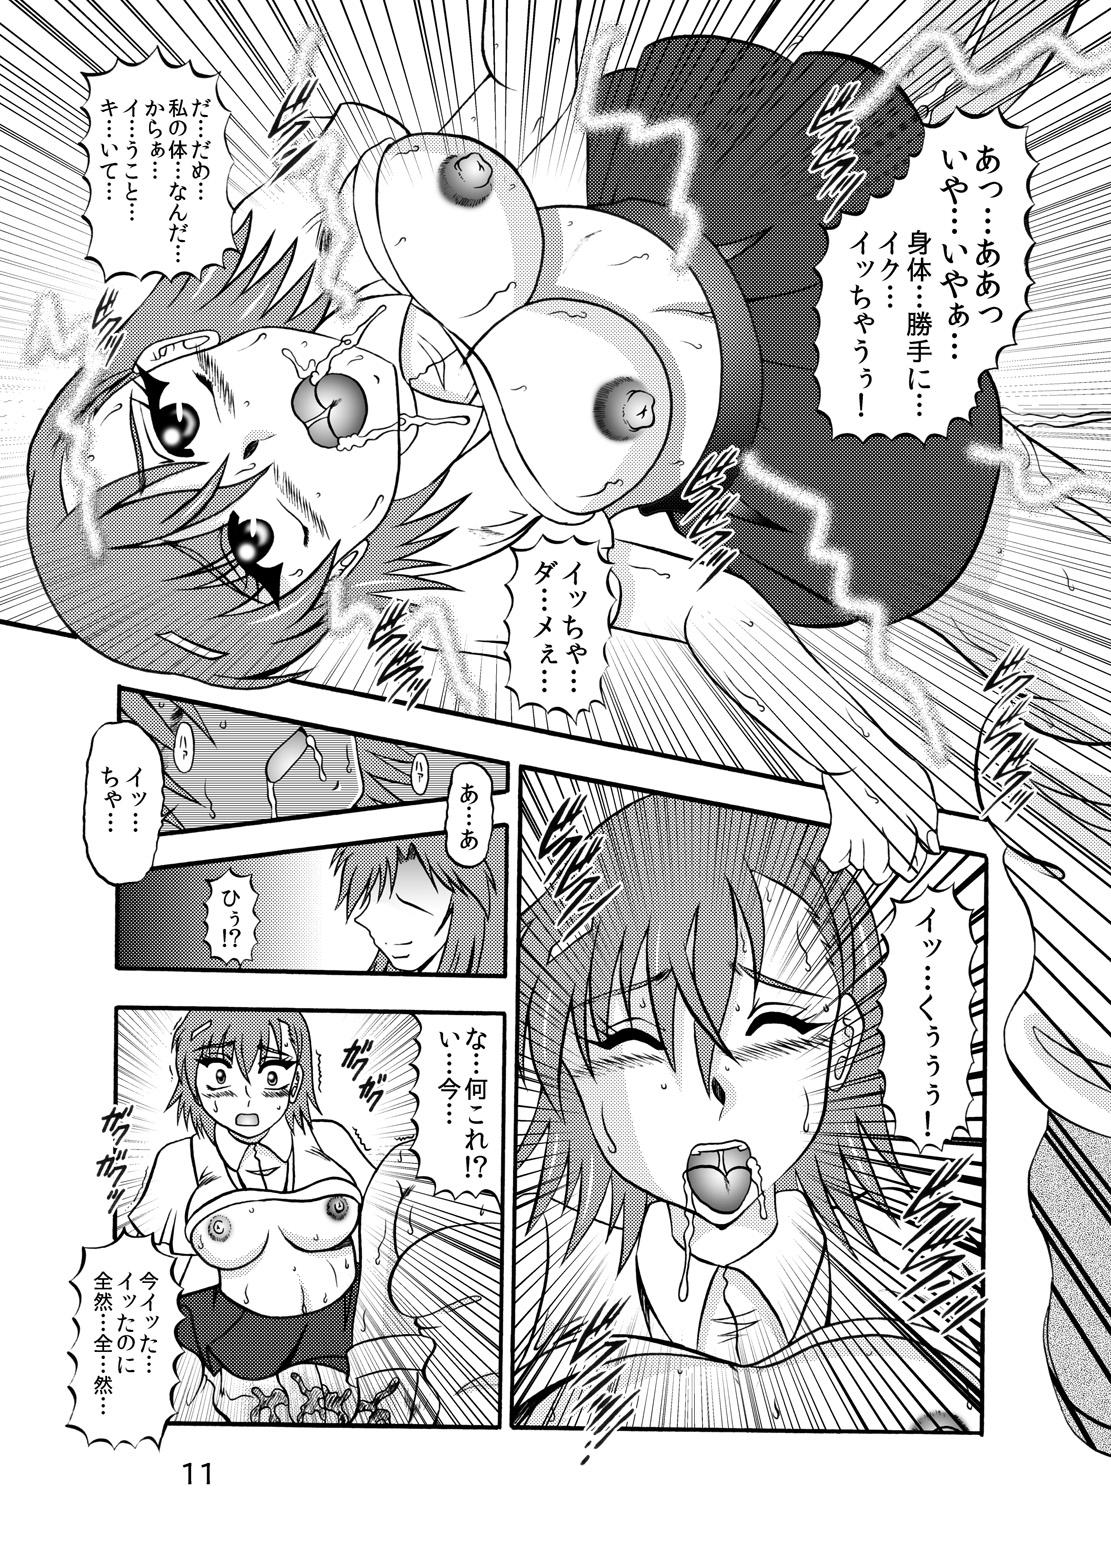 Rabo Inyoku Kaizou: Misaka Mikoto - Toaru kagaku no railgun Nylons - Page 9